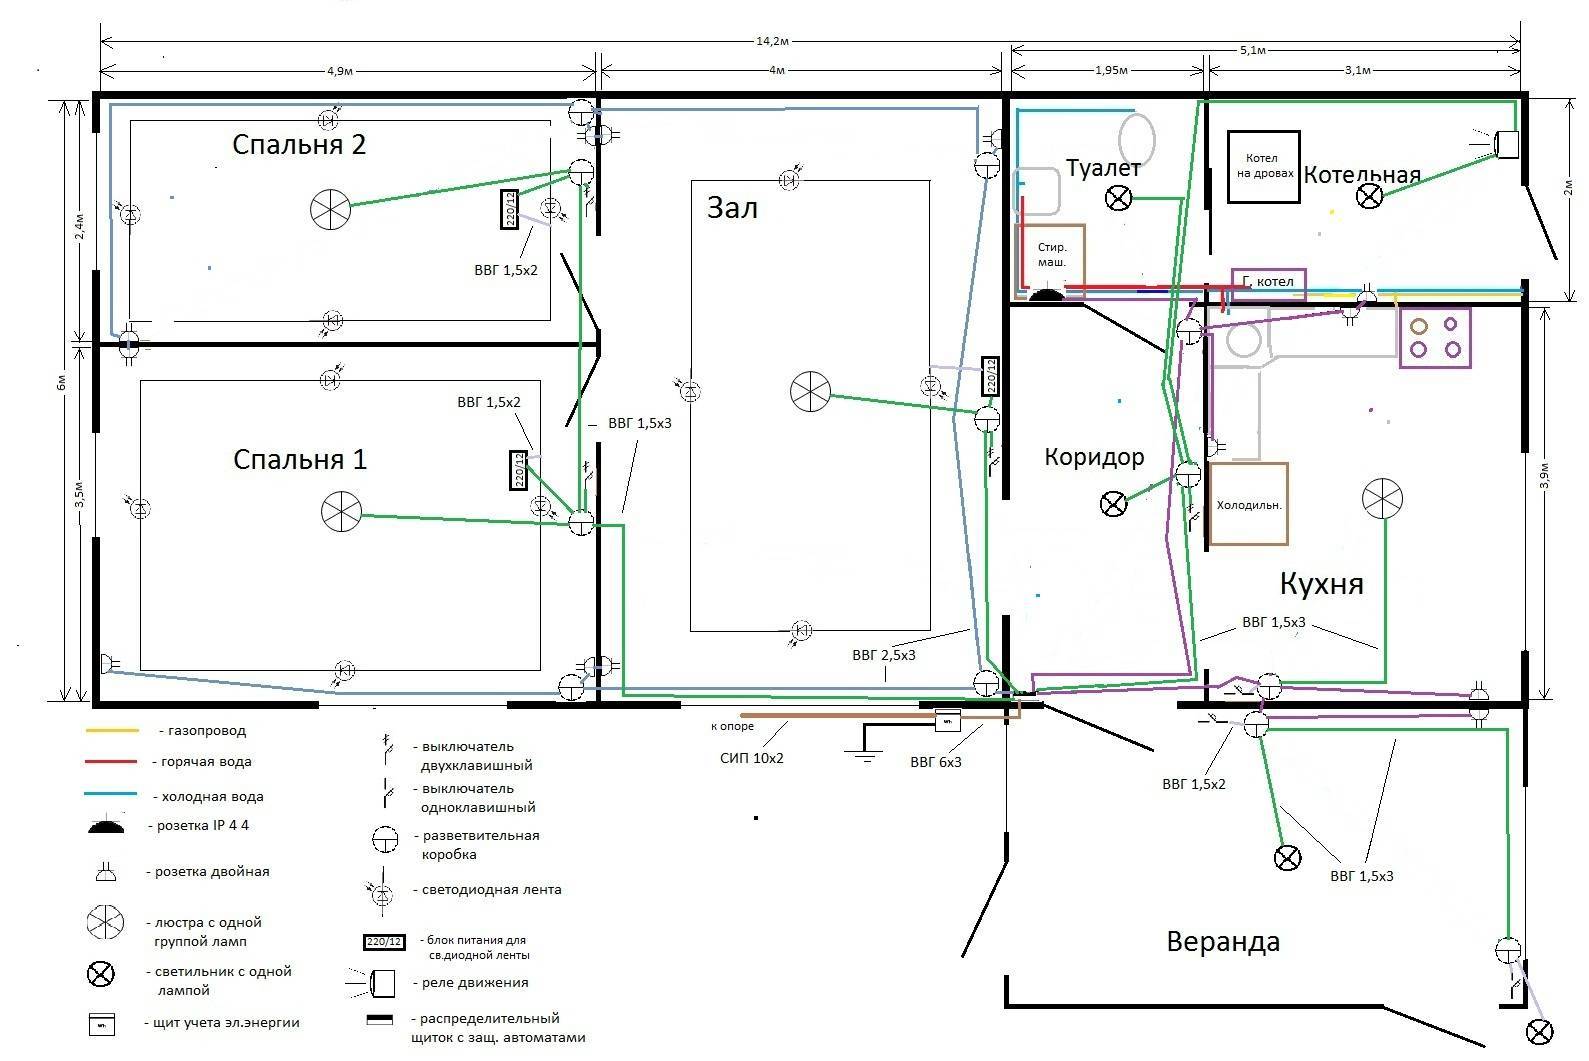 Проект электропроводки в квартире и частном доме, программа для проектирования, рисования схем и плана проводки